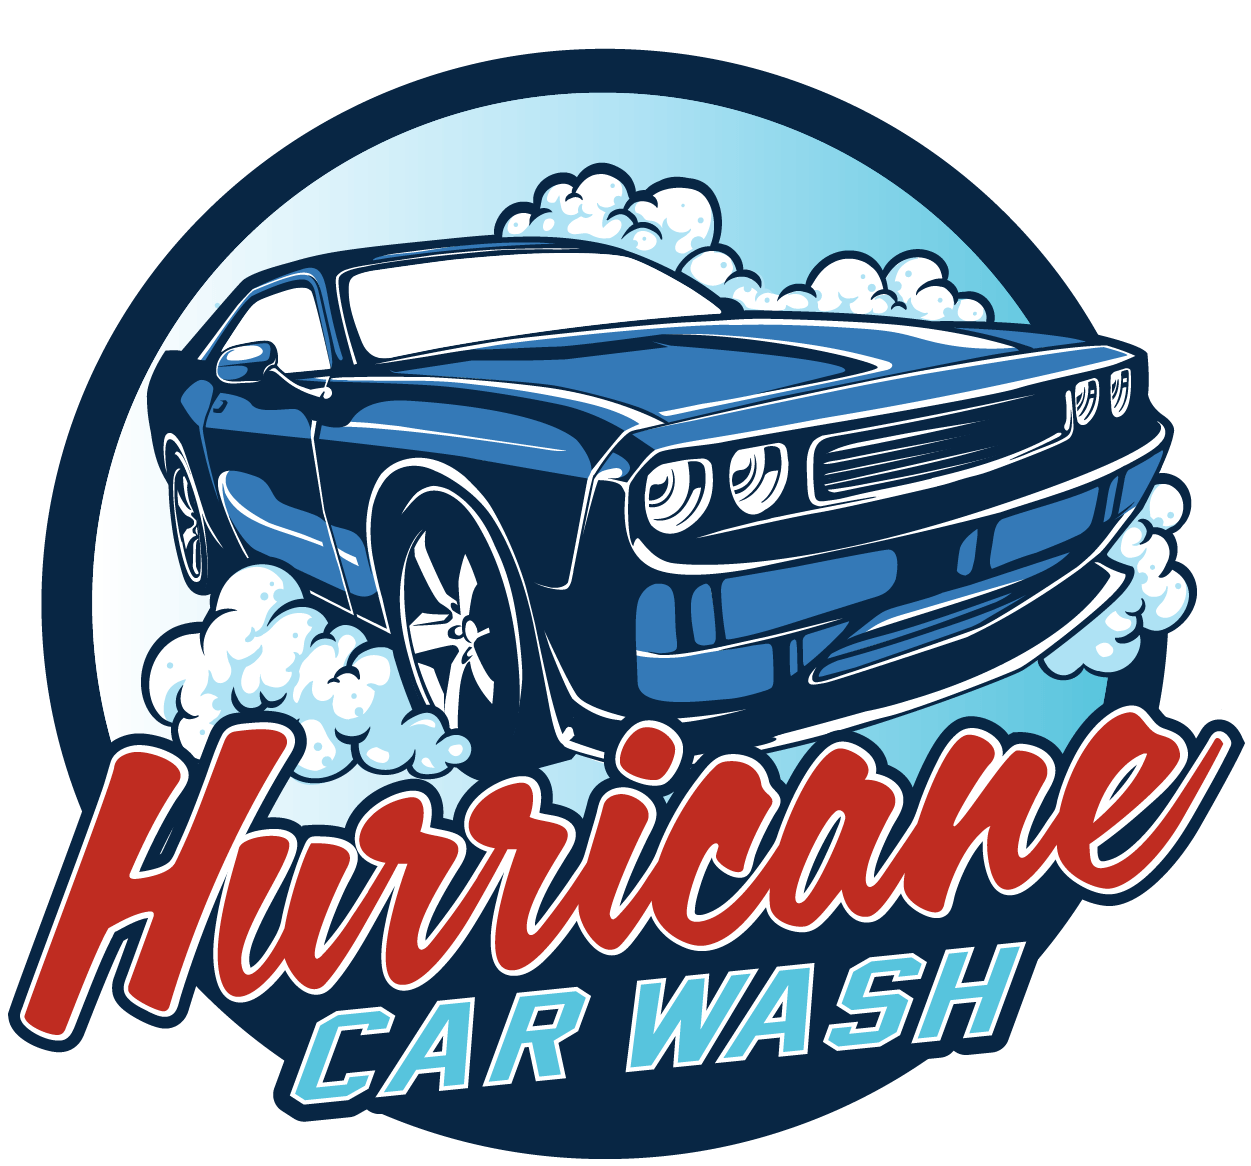 Hurricane Car Wash in Penn Yan, New York